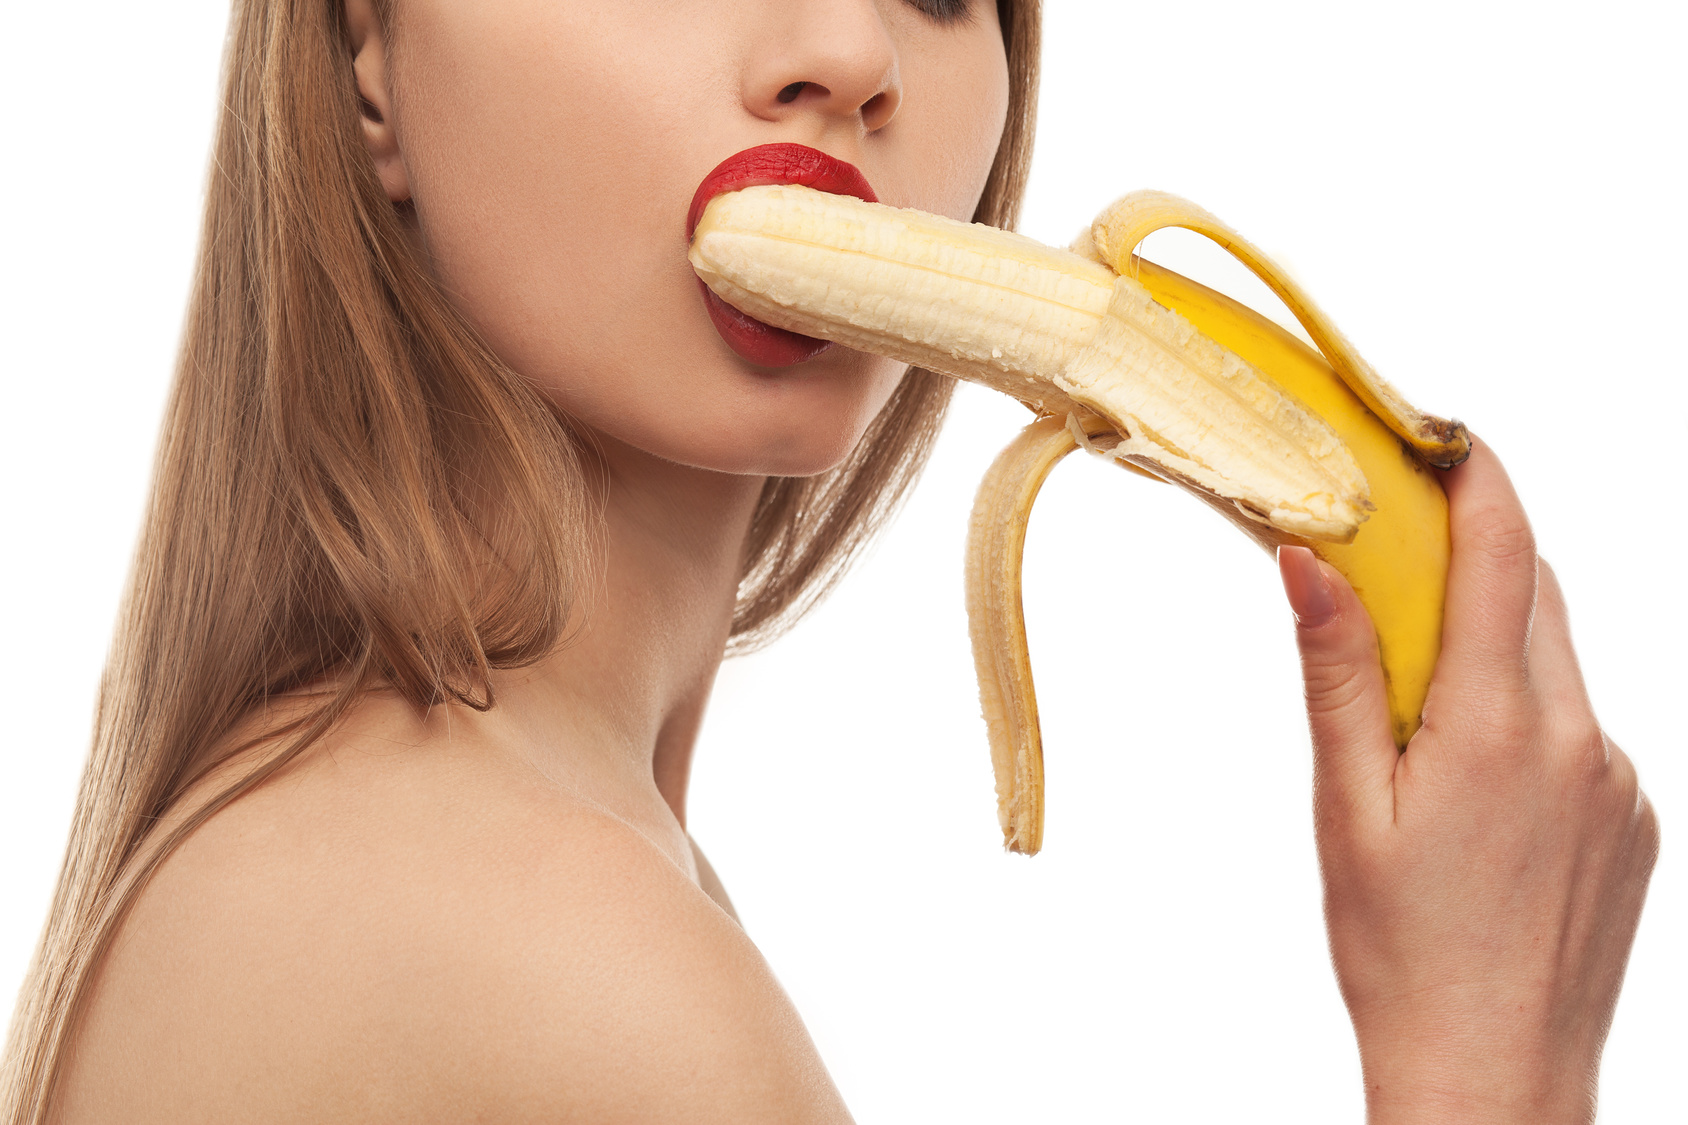 Идеал женственности и красоты трахает бананом пизду